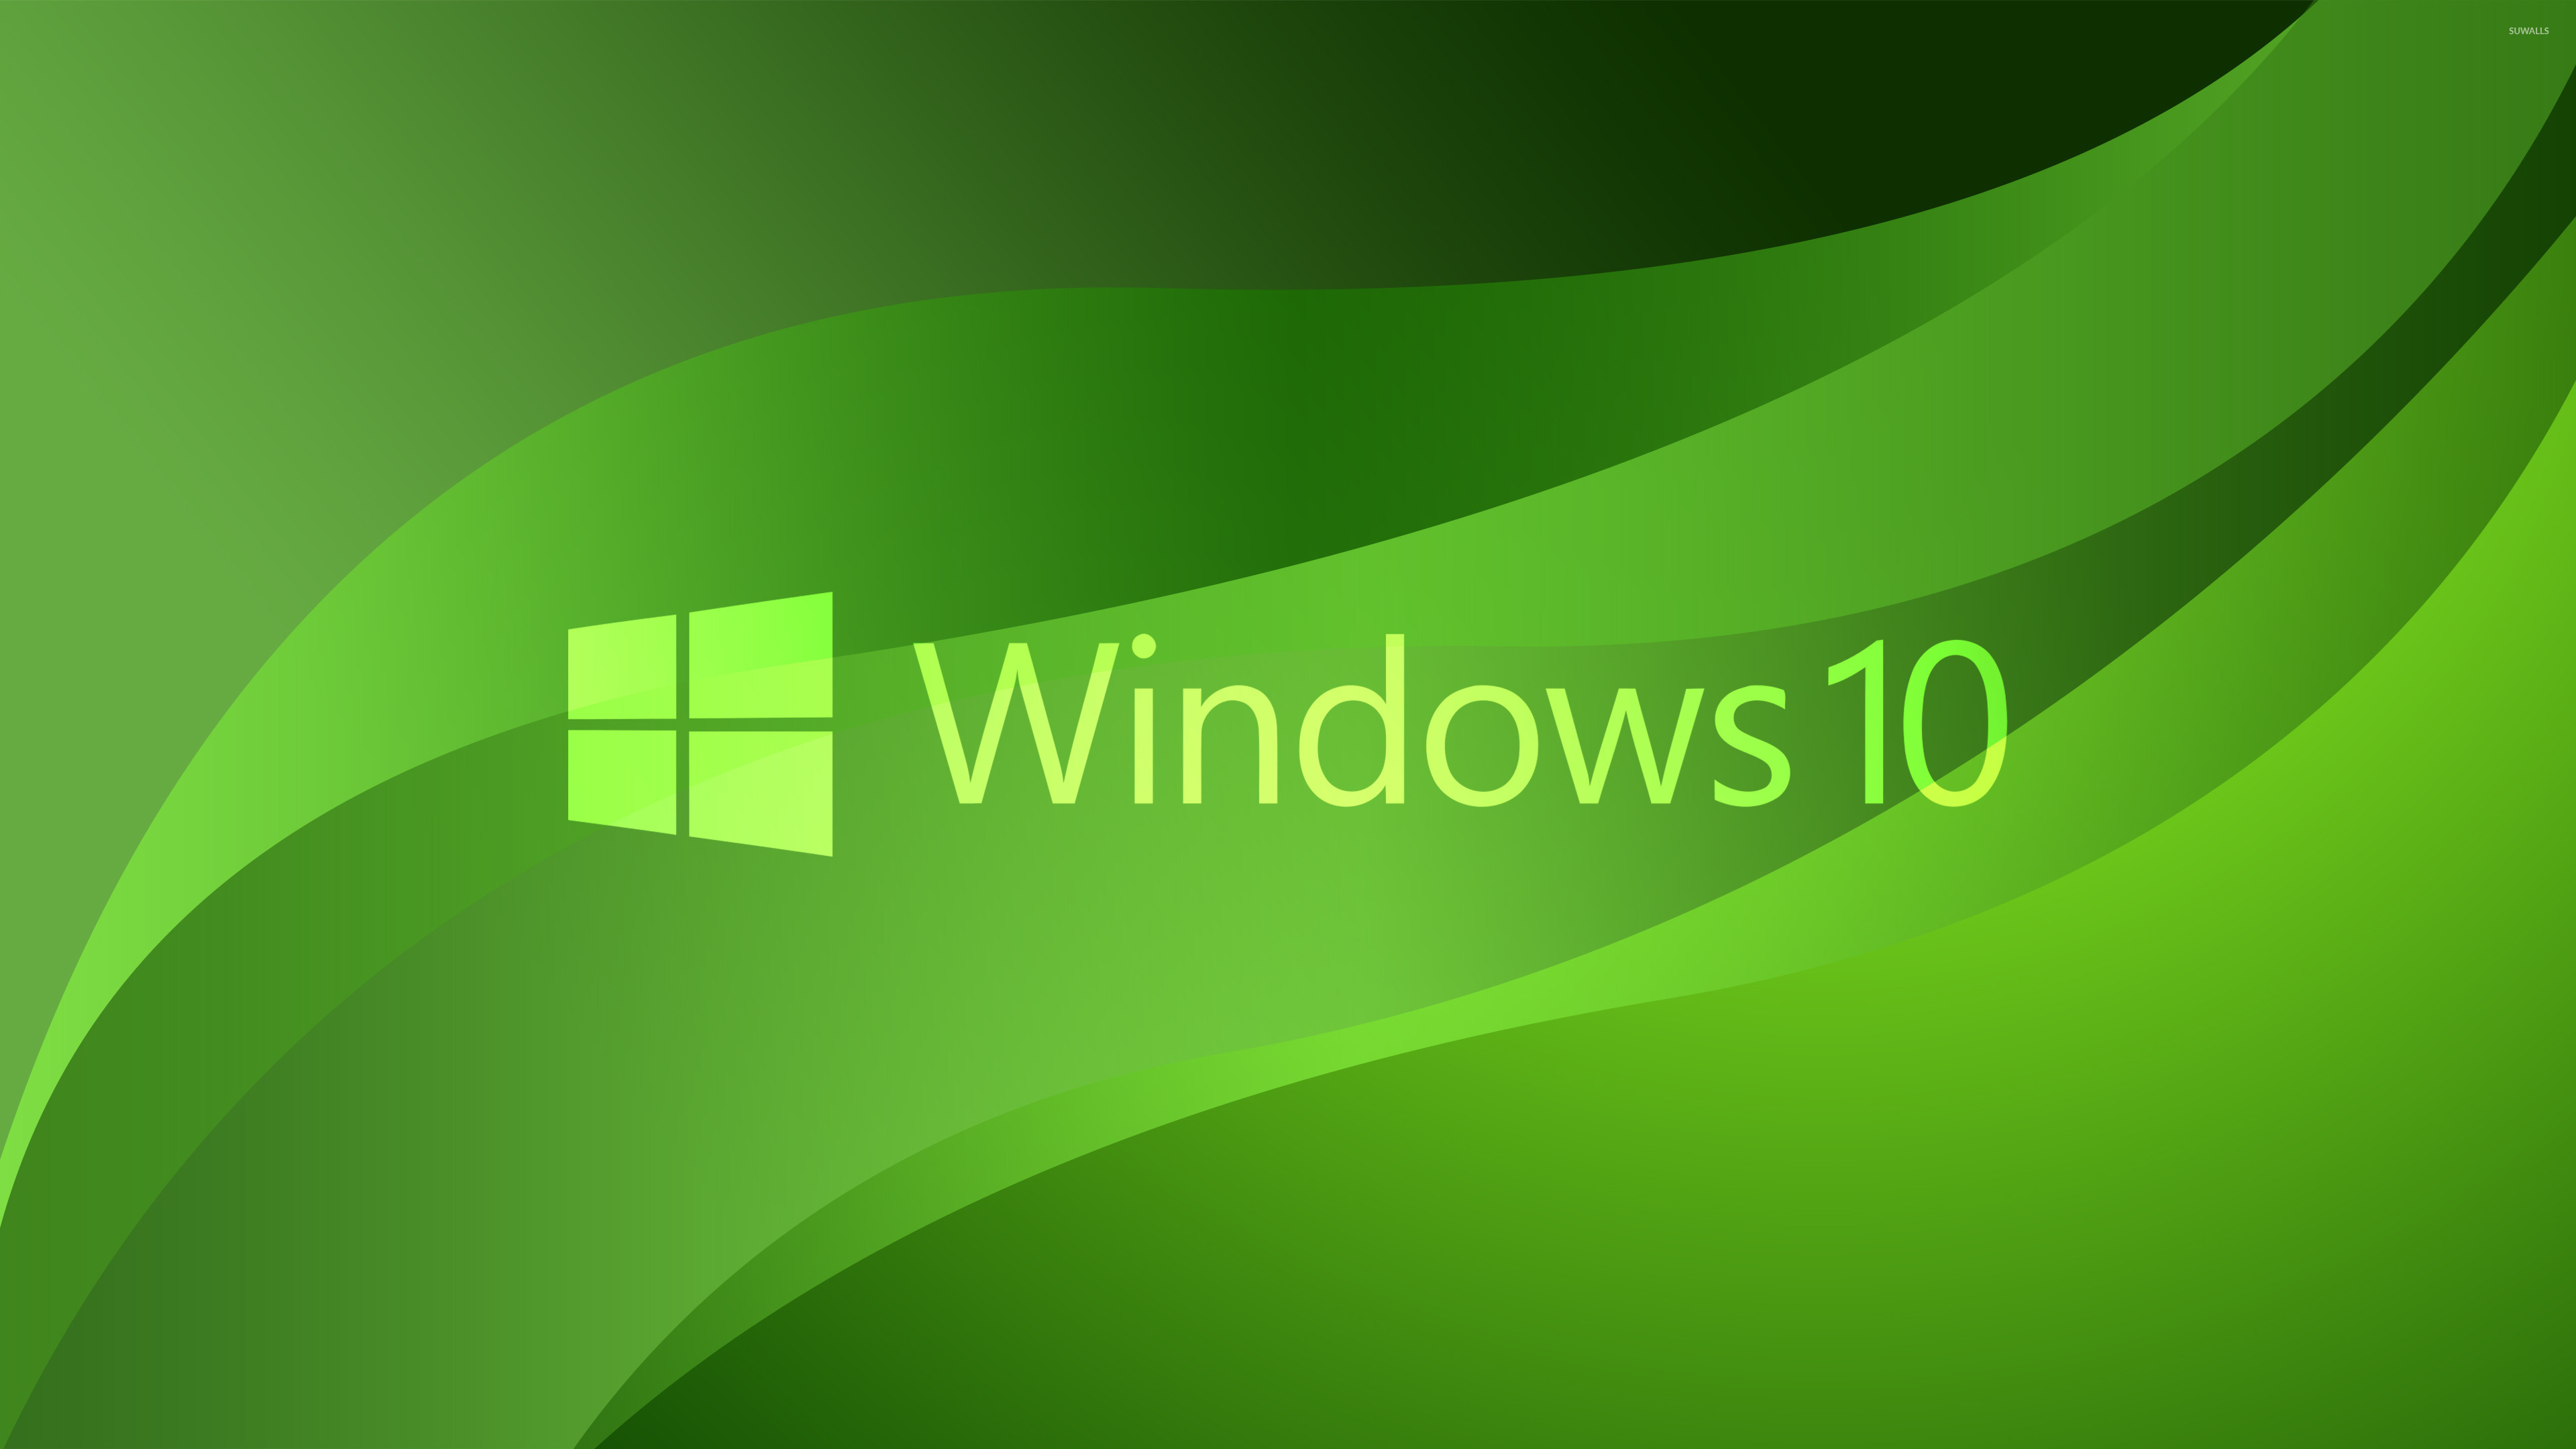 Windows 10 green text logo on green waves wallpaper wallpaper